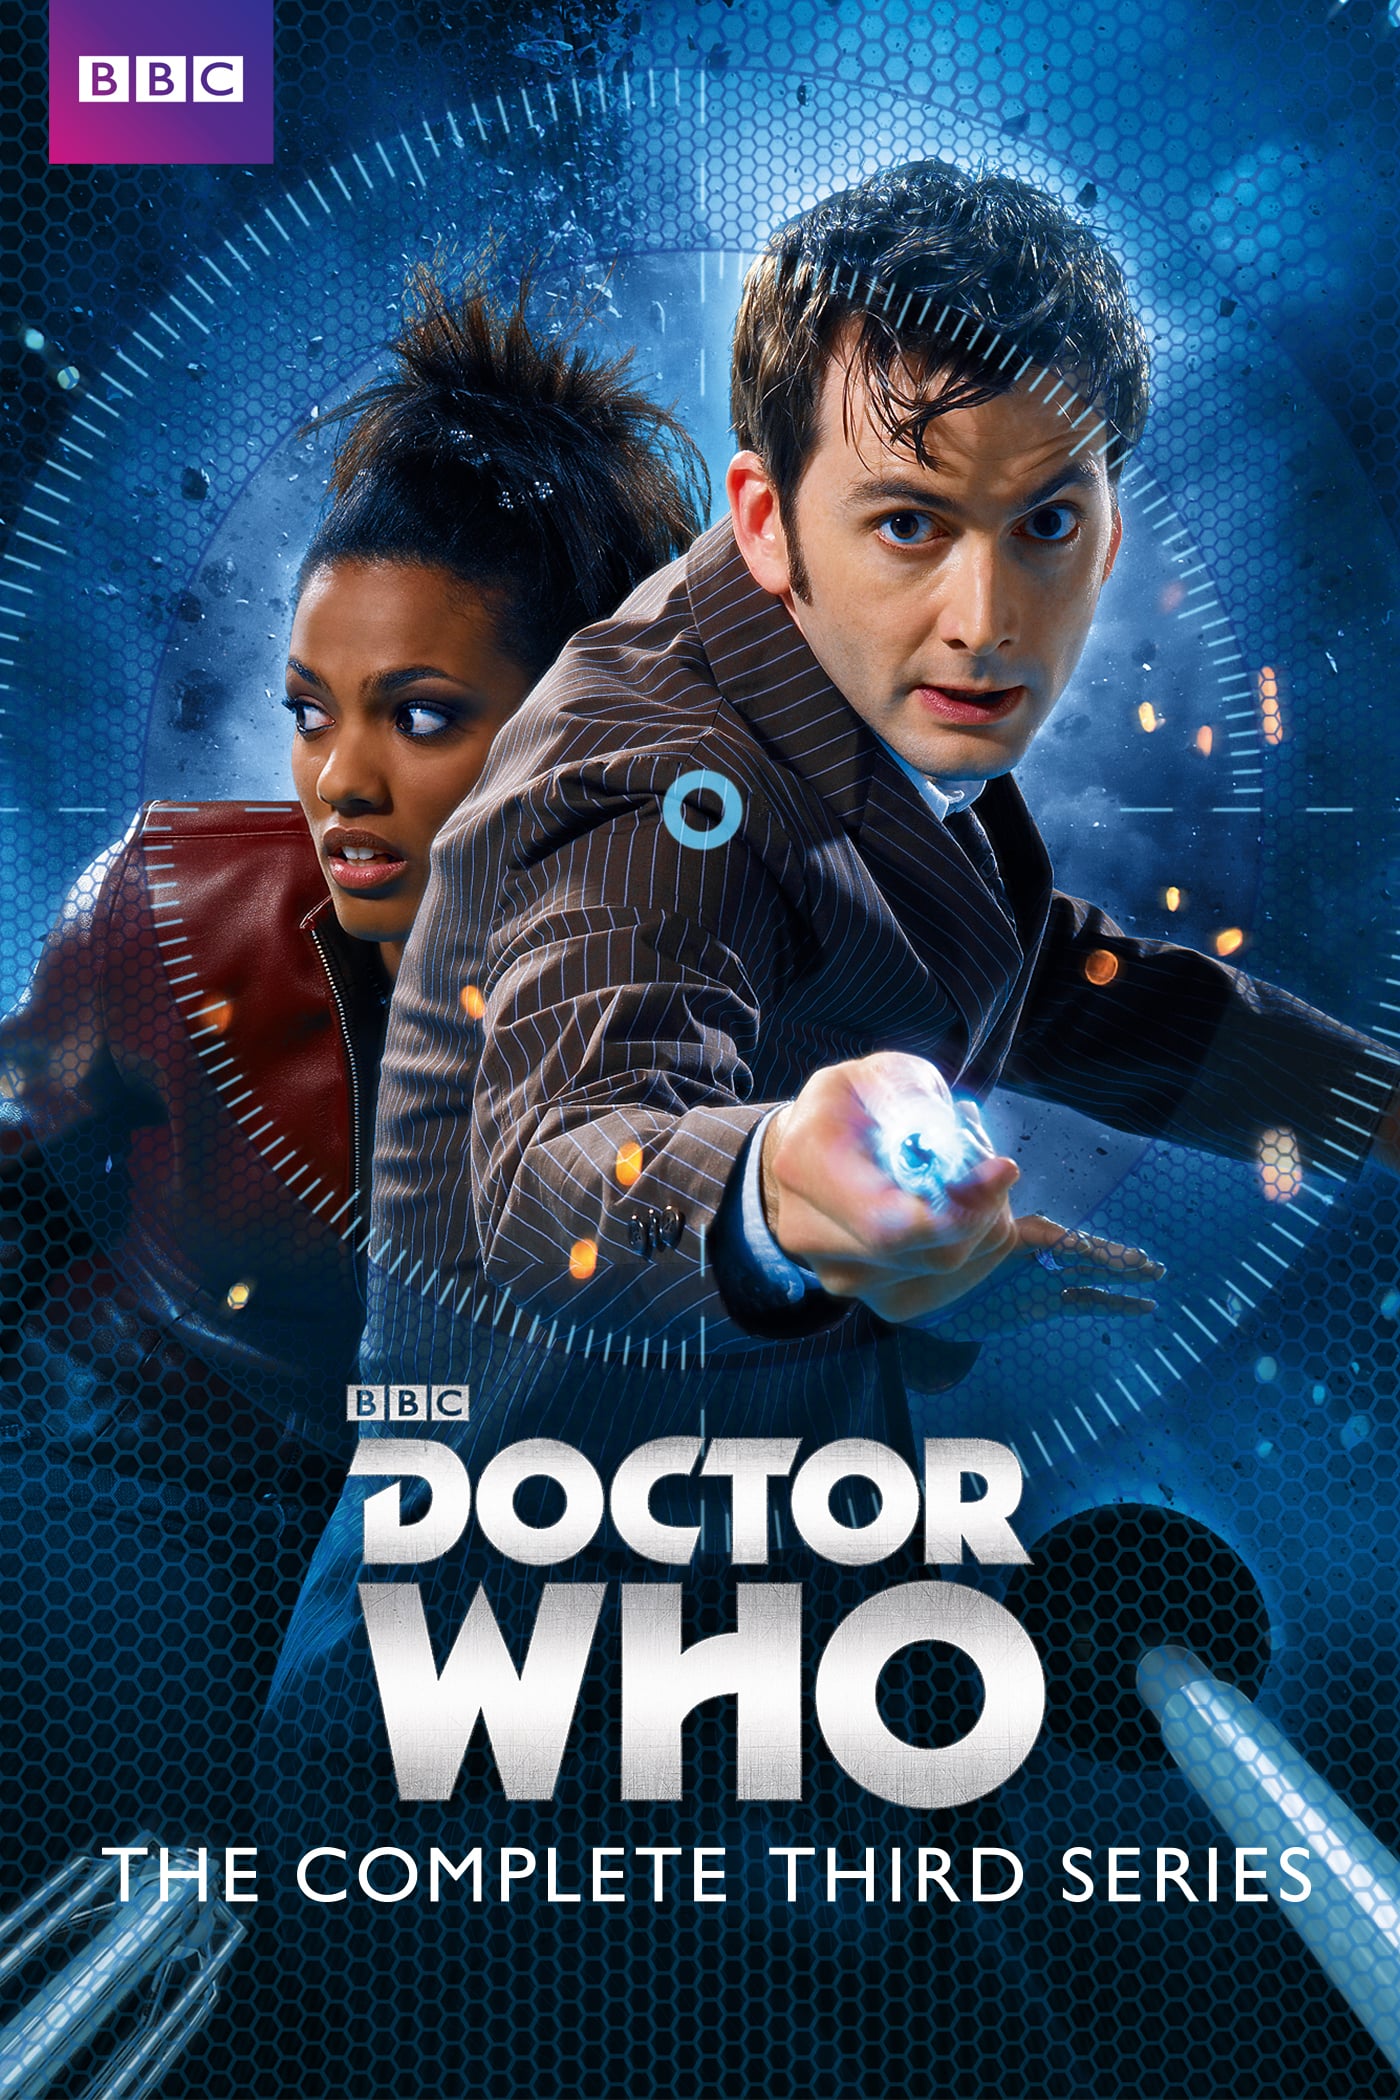 Doctor Who 2005 3ª Temporada Adorocinema